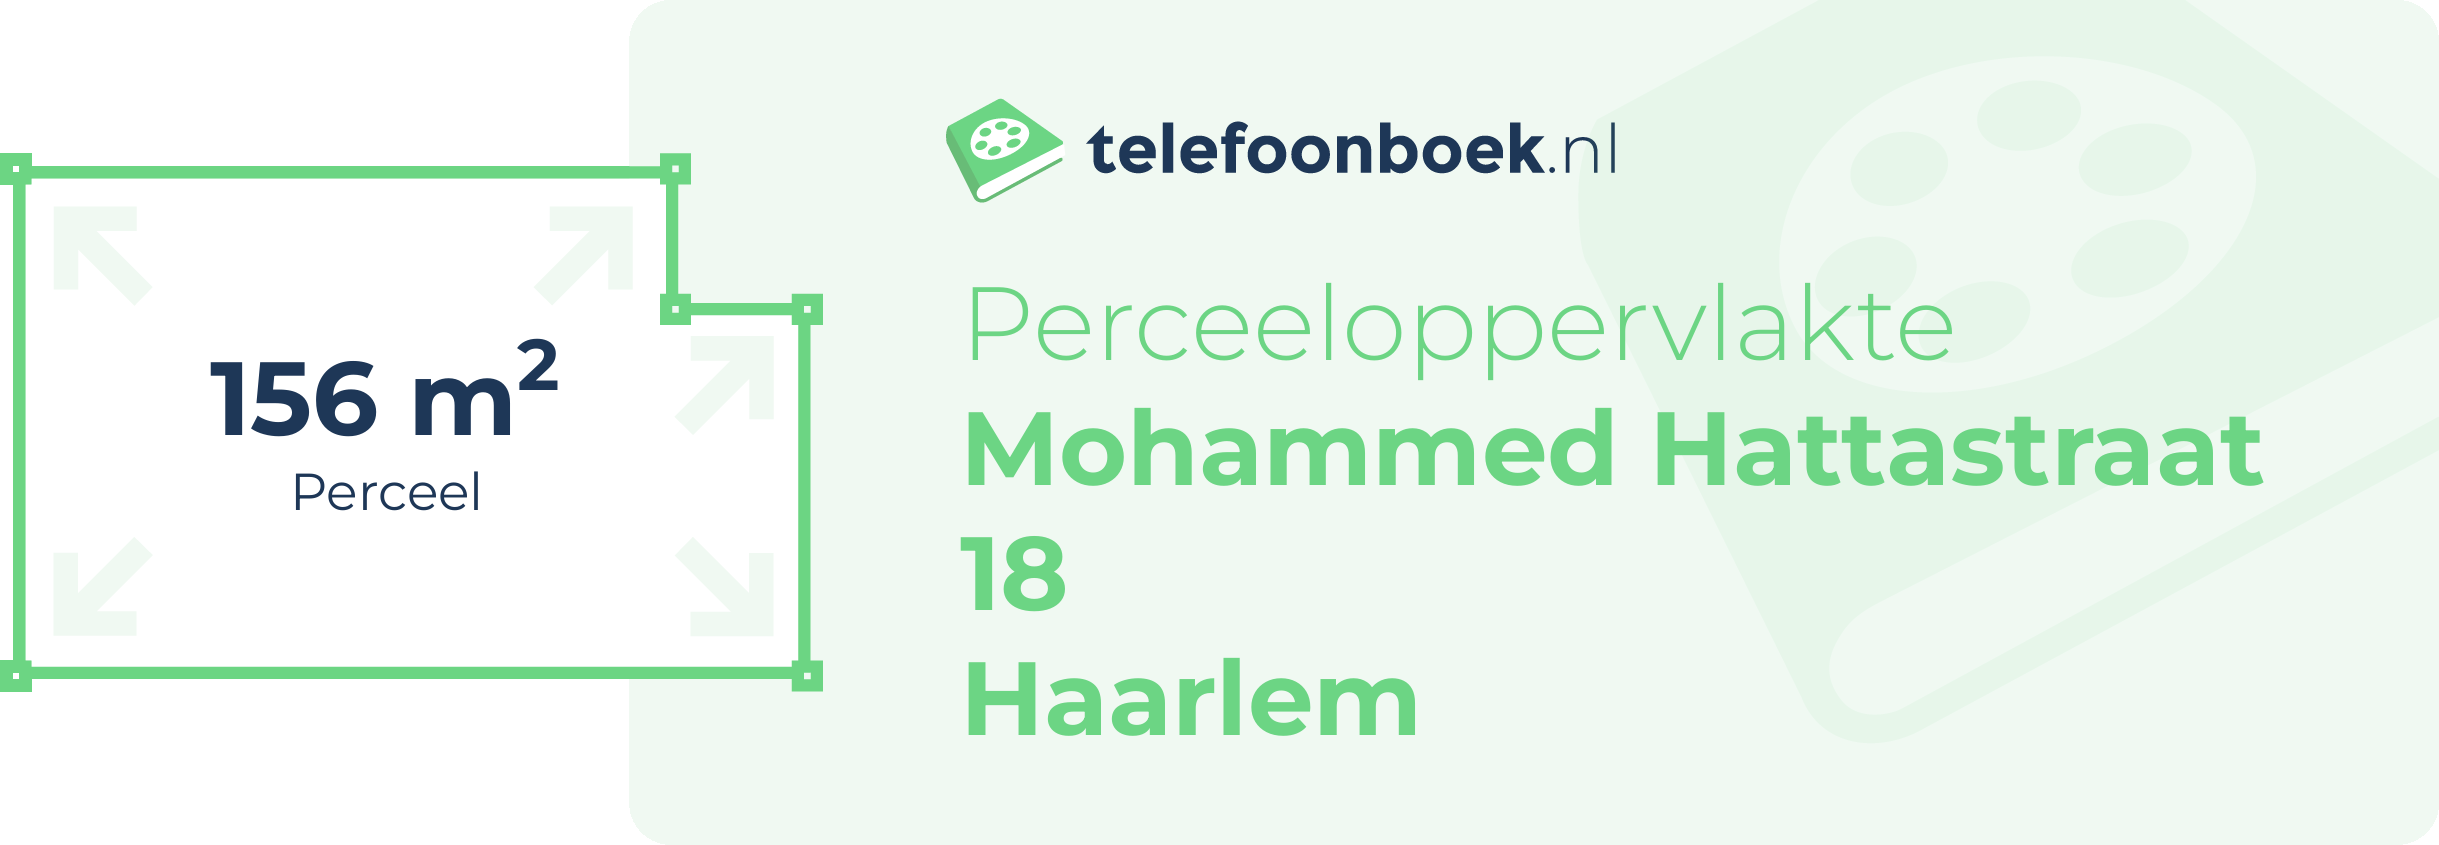 Perceeloppervlakte Mohammed Hattastraat 18 Haarlem